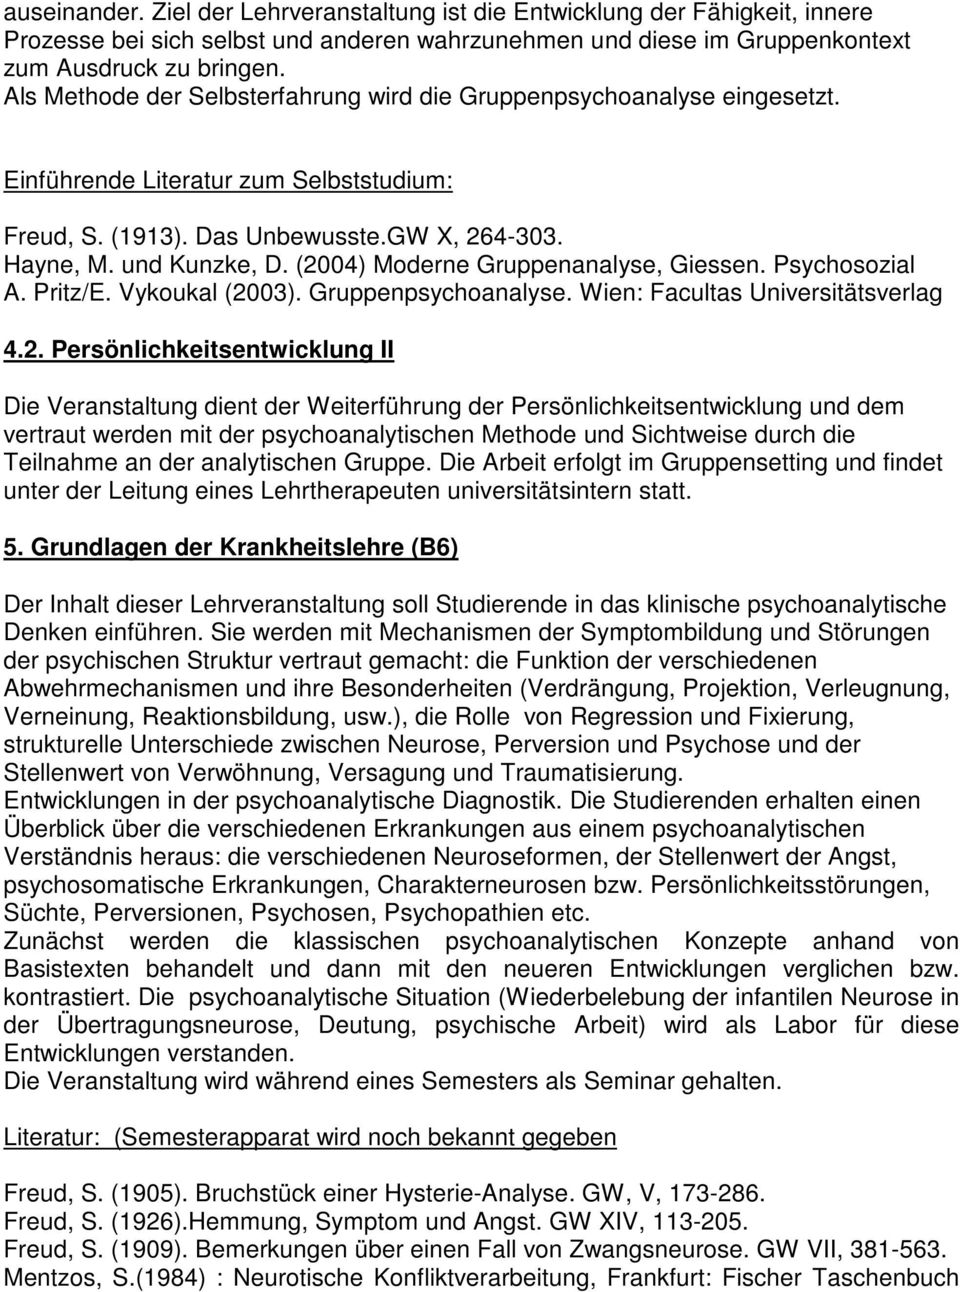 (2004) Moderne Gruppenanalyse, Giessen. Psychosozial A. Pritz/E. Vykoukal (2003). Gruppenpsychoanalyse. Wien: Facultas Universitätsverlag 4.2. Persönlichkeitsentwicklung II Die Veranstaltung dient